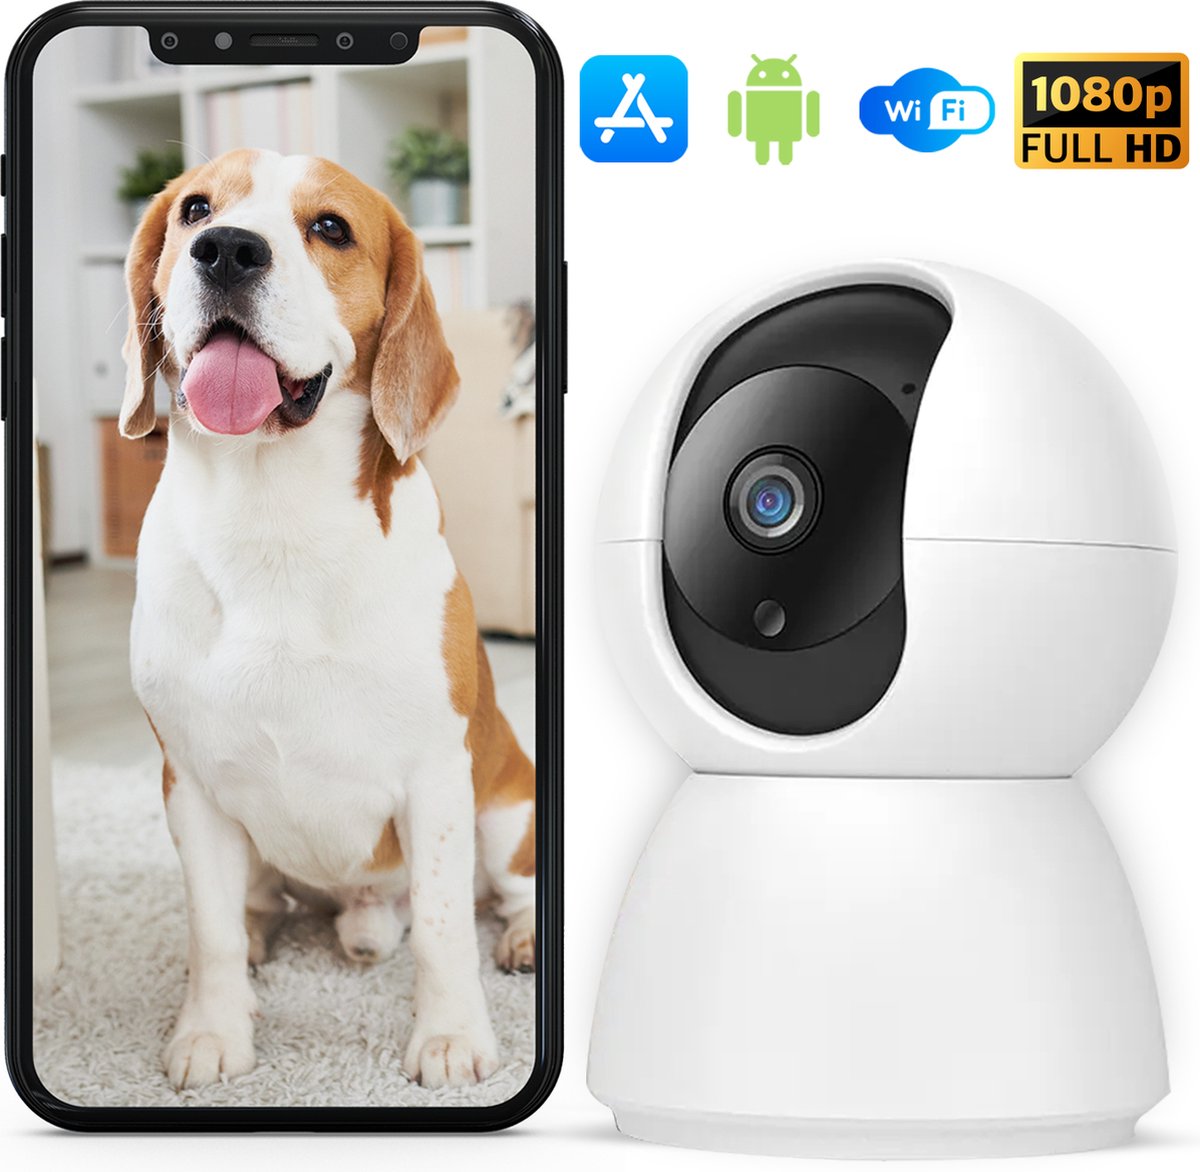 Huisdiercamera - Beveiligingscamera met beweegdetectie - Hondencamera volledig HD met app - Indoor camera - Terugspraakfunctie en Night vision - Geschikt voor huisdieren/baby/beveiliging